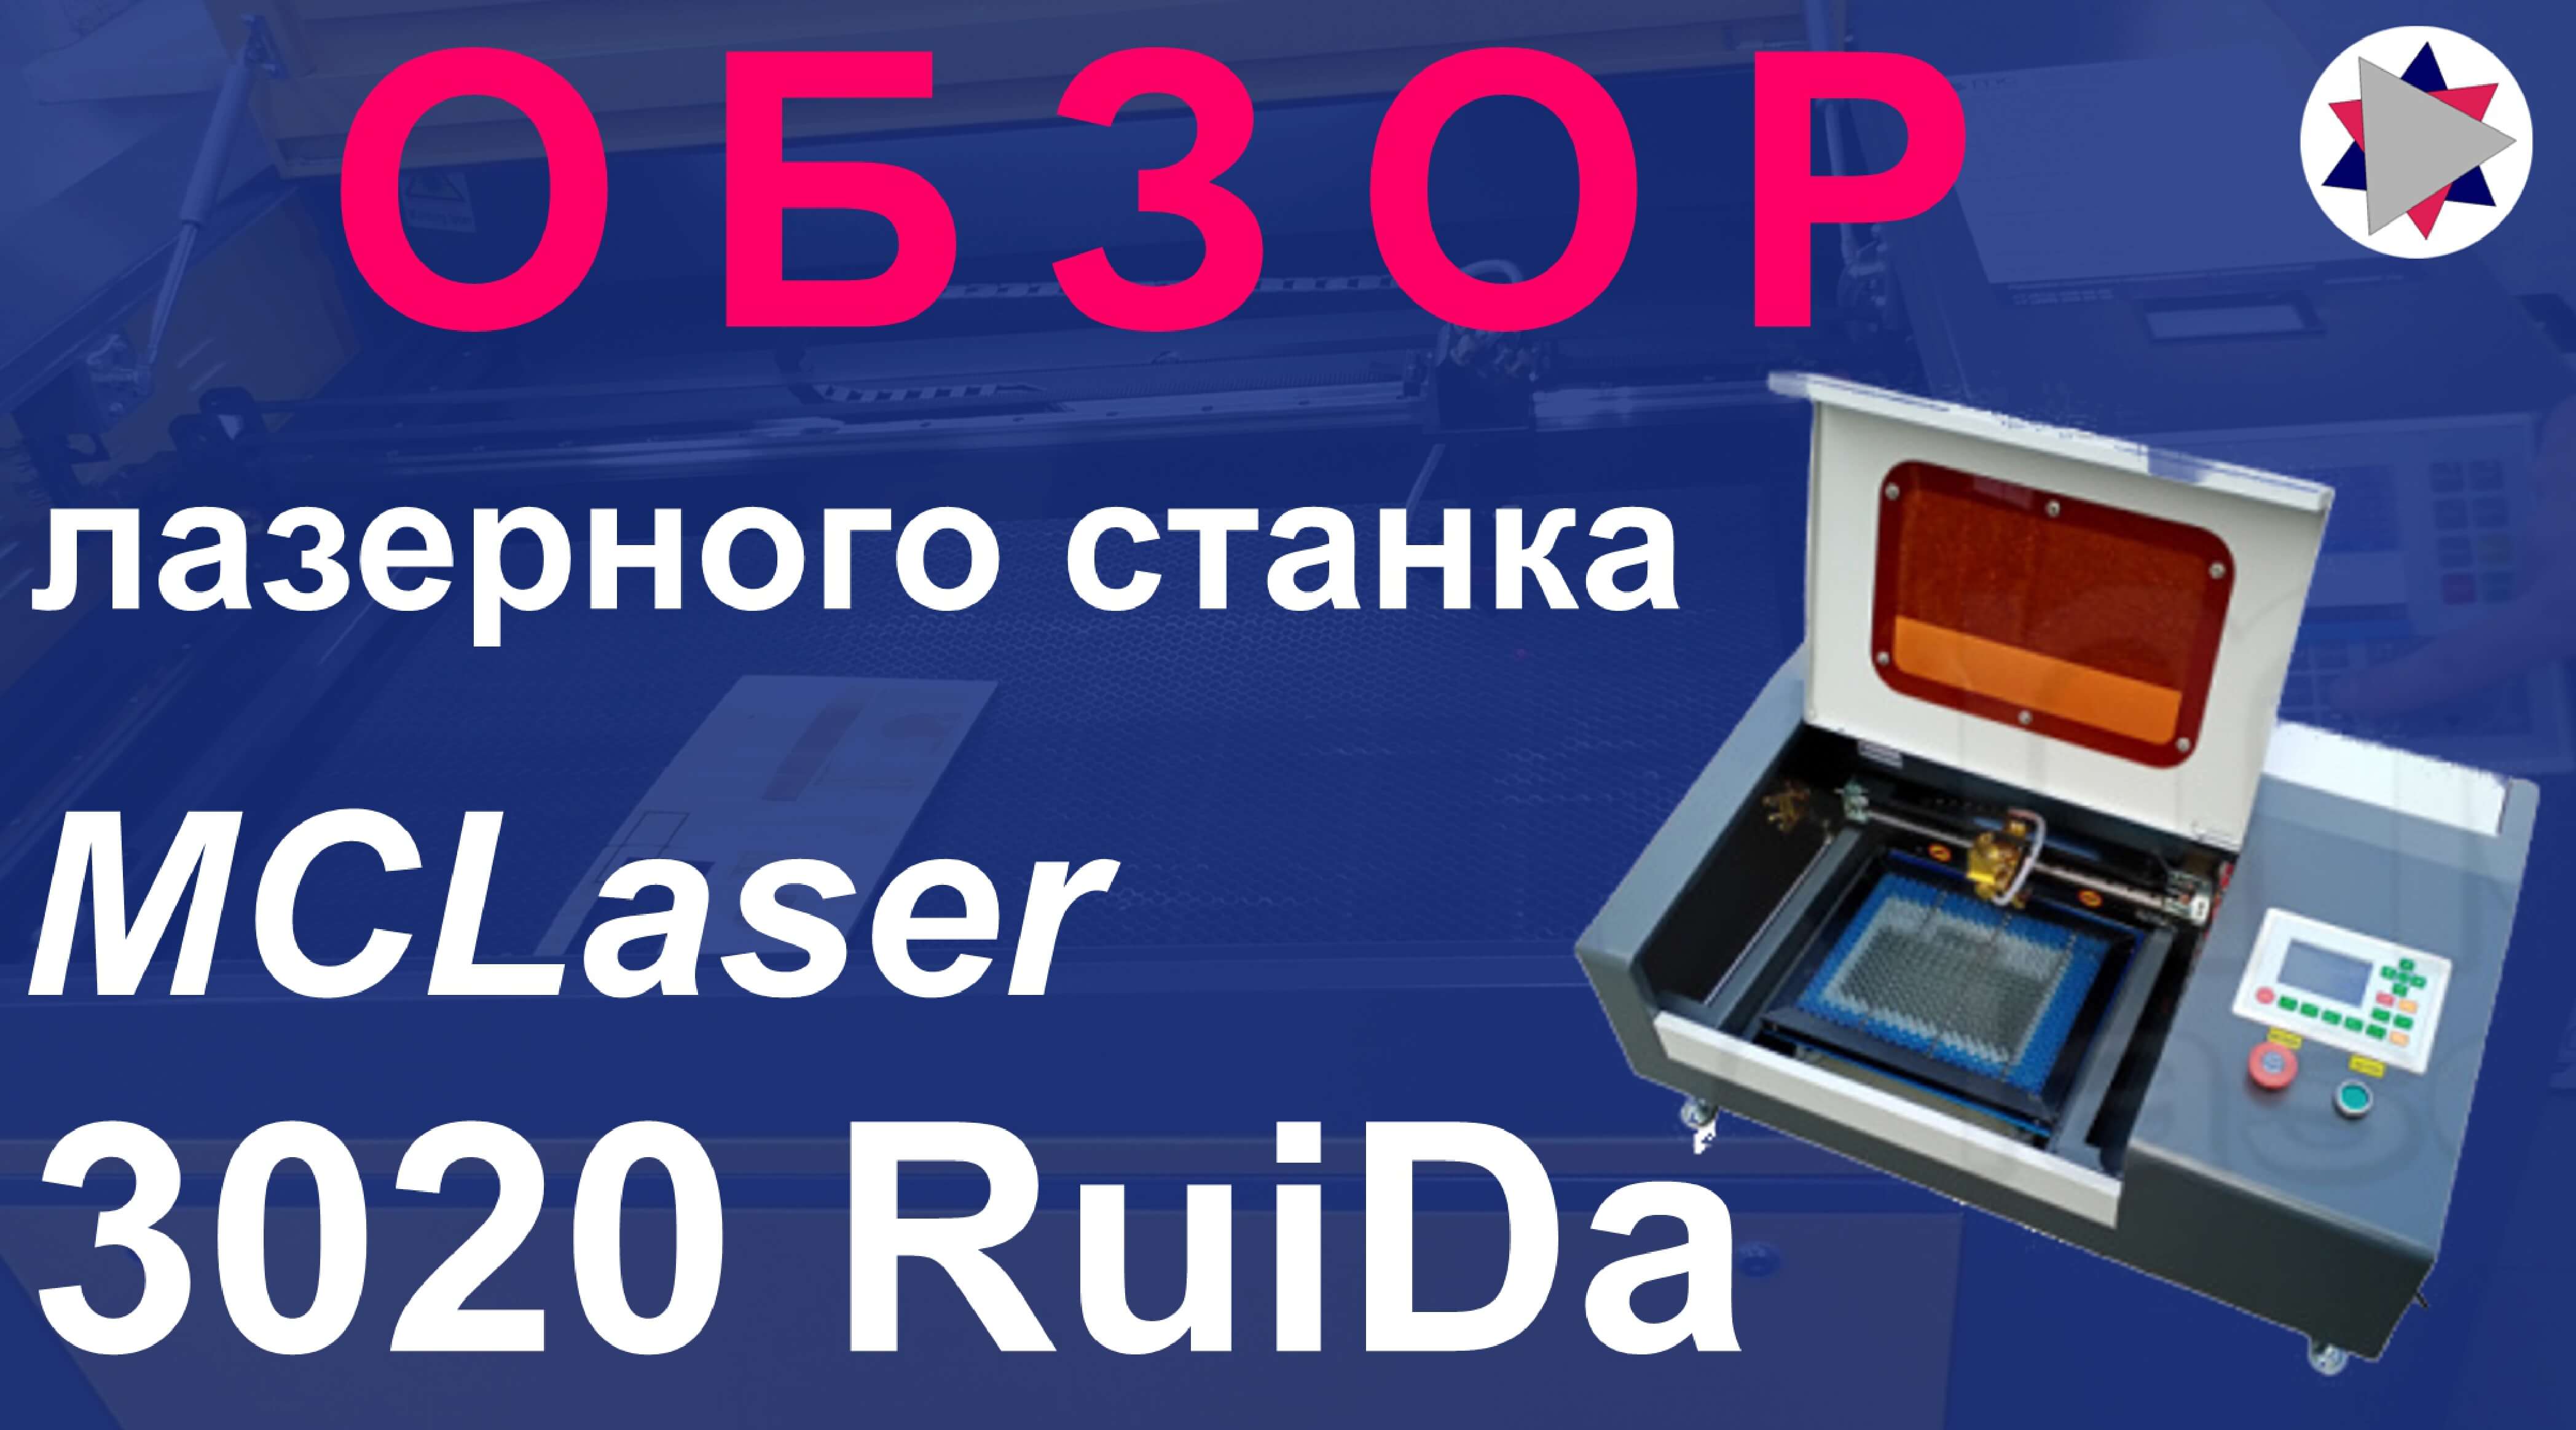 ✅ Подробный обзор лазерного станка MCLaser-3020 Ruida